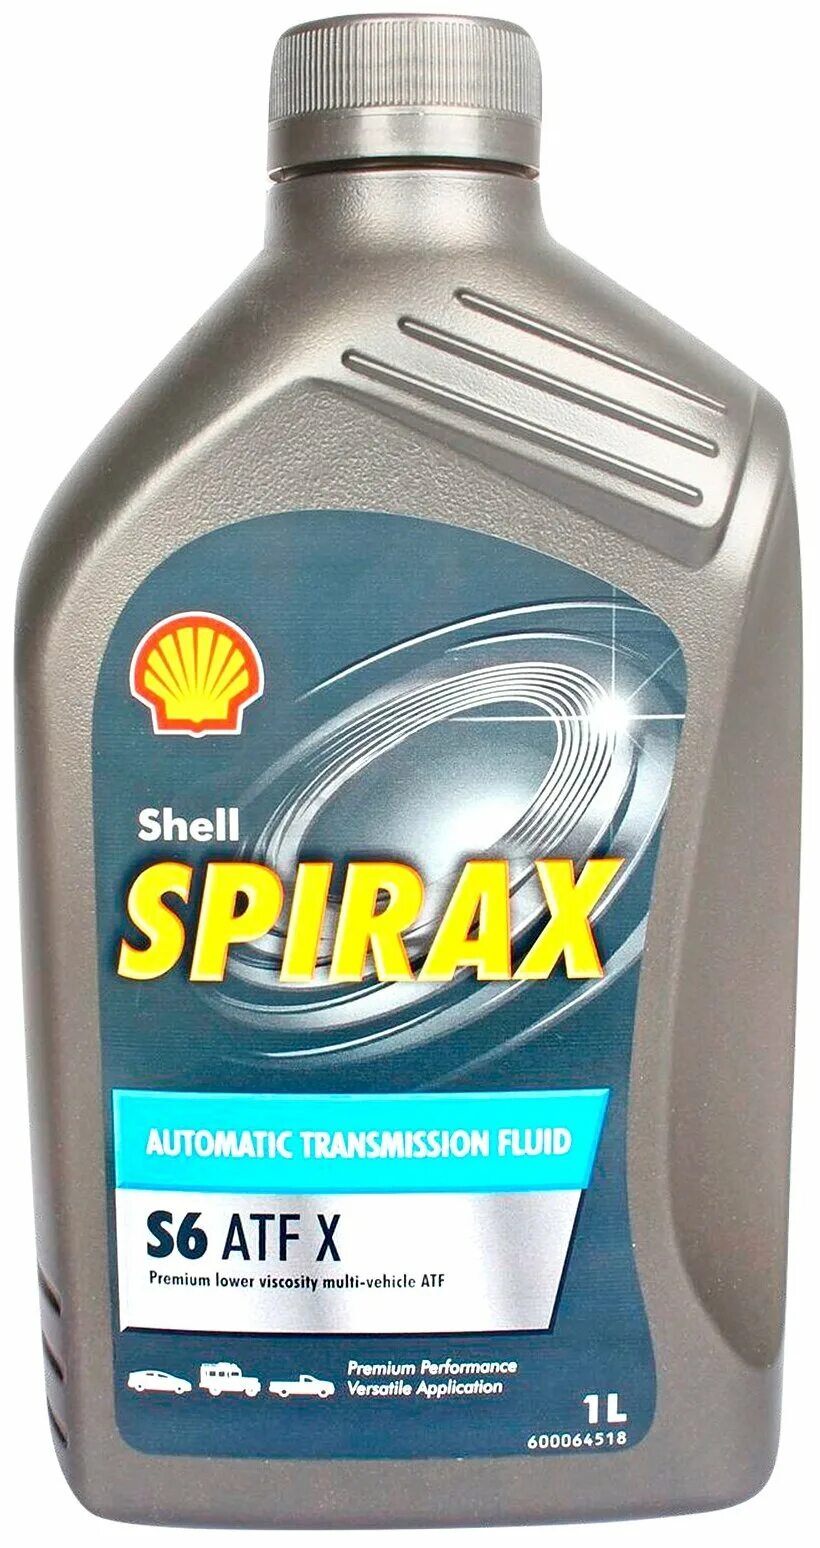 Shell Spirax s6 ATF. Spirax s6 ATF X. Shell Spirax s6 ATF X. Трансмиссионное масло Shell Spirax s6 ATF X.